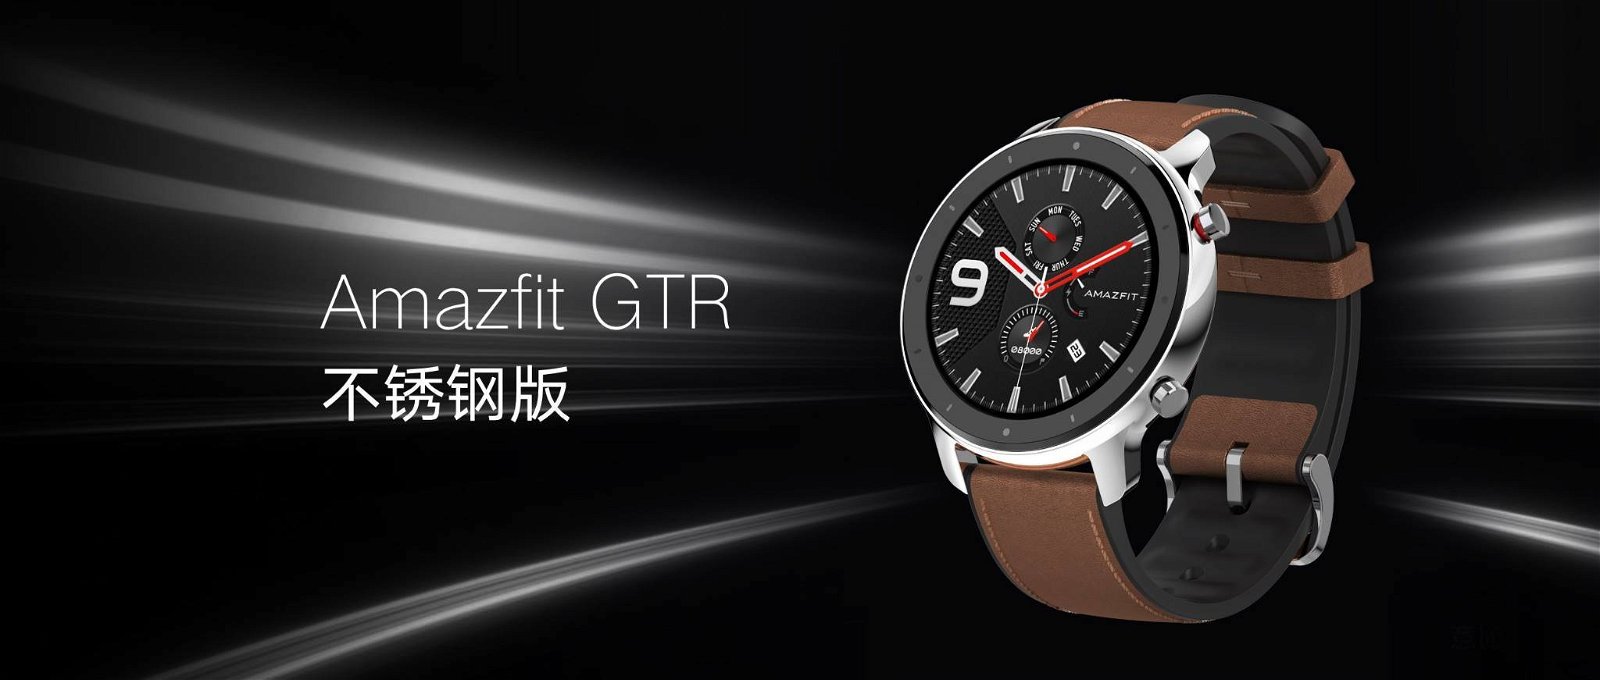 Immagine di Amazfit GTR, smartwatch con autonomia fino a 74 giorni